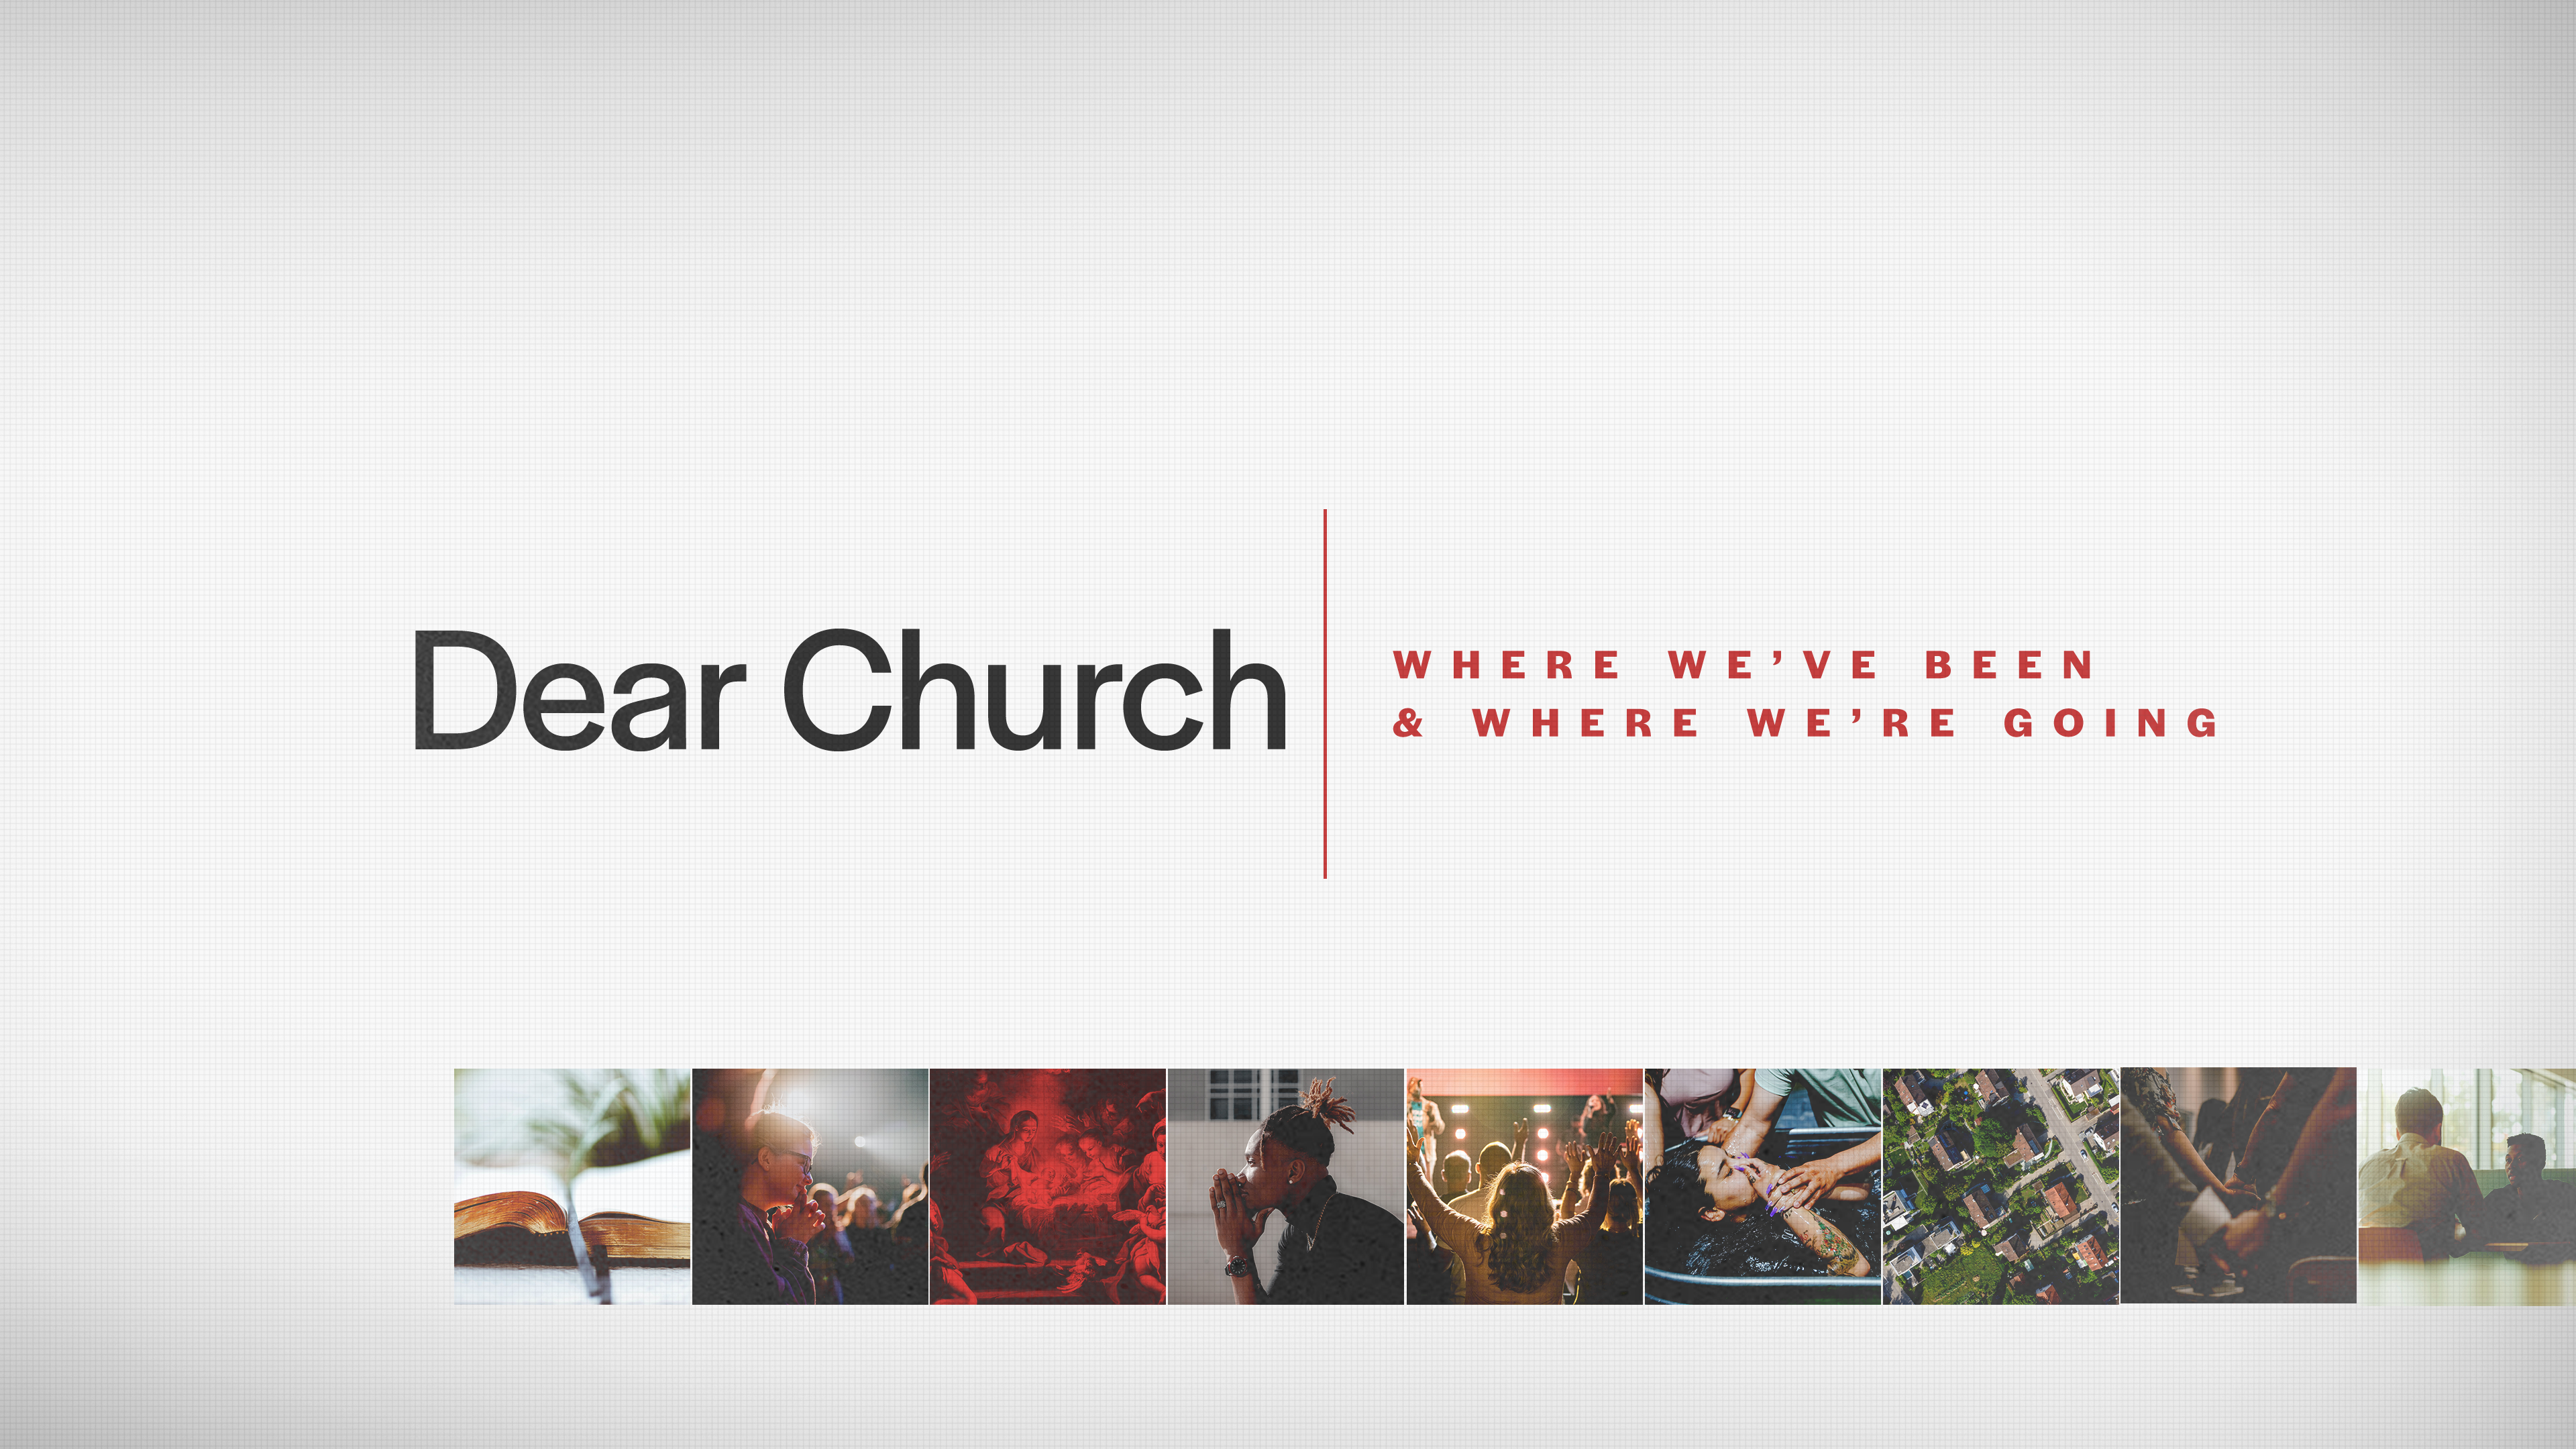 Dear Church: God Is With Us!